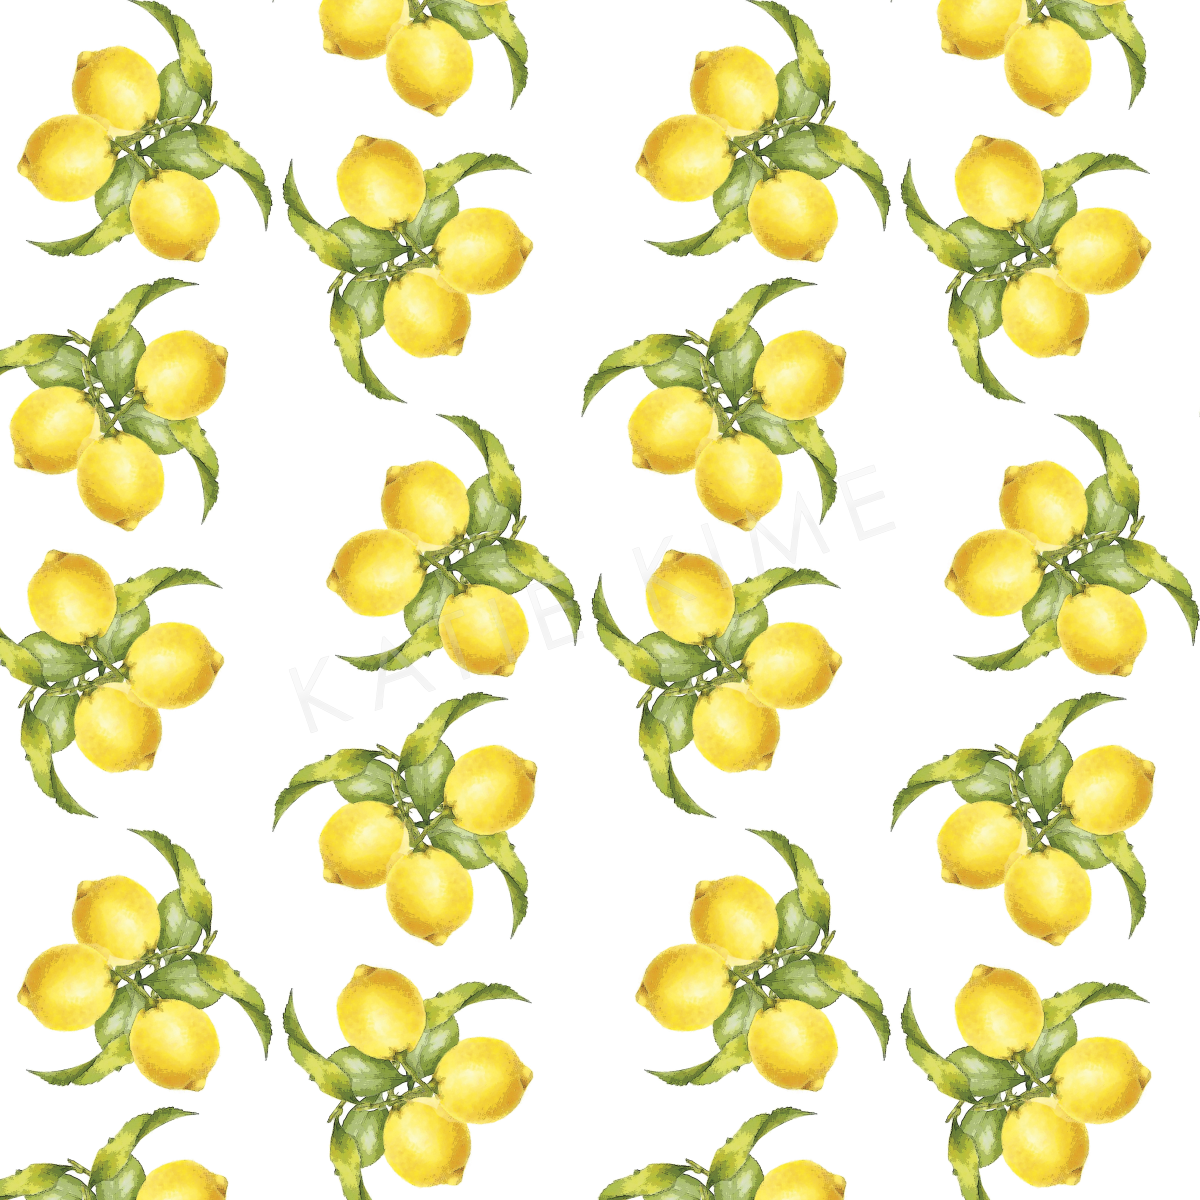 Wallpaper Double Roll Lemons Wallpaper Katie Kime Design